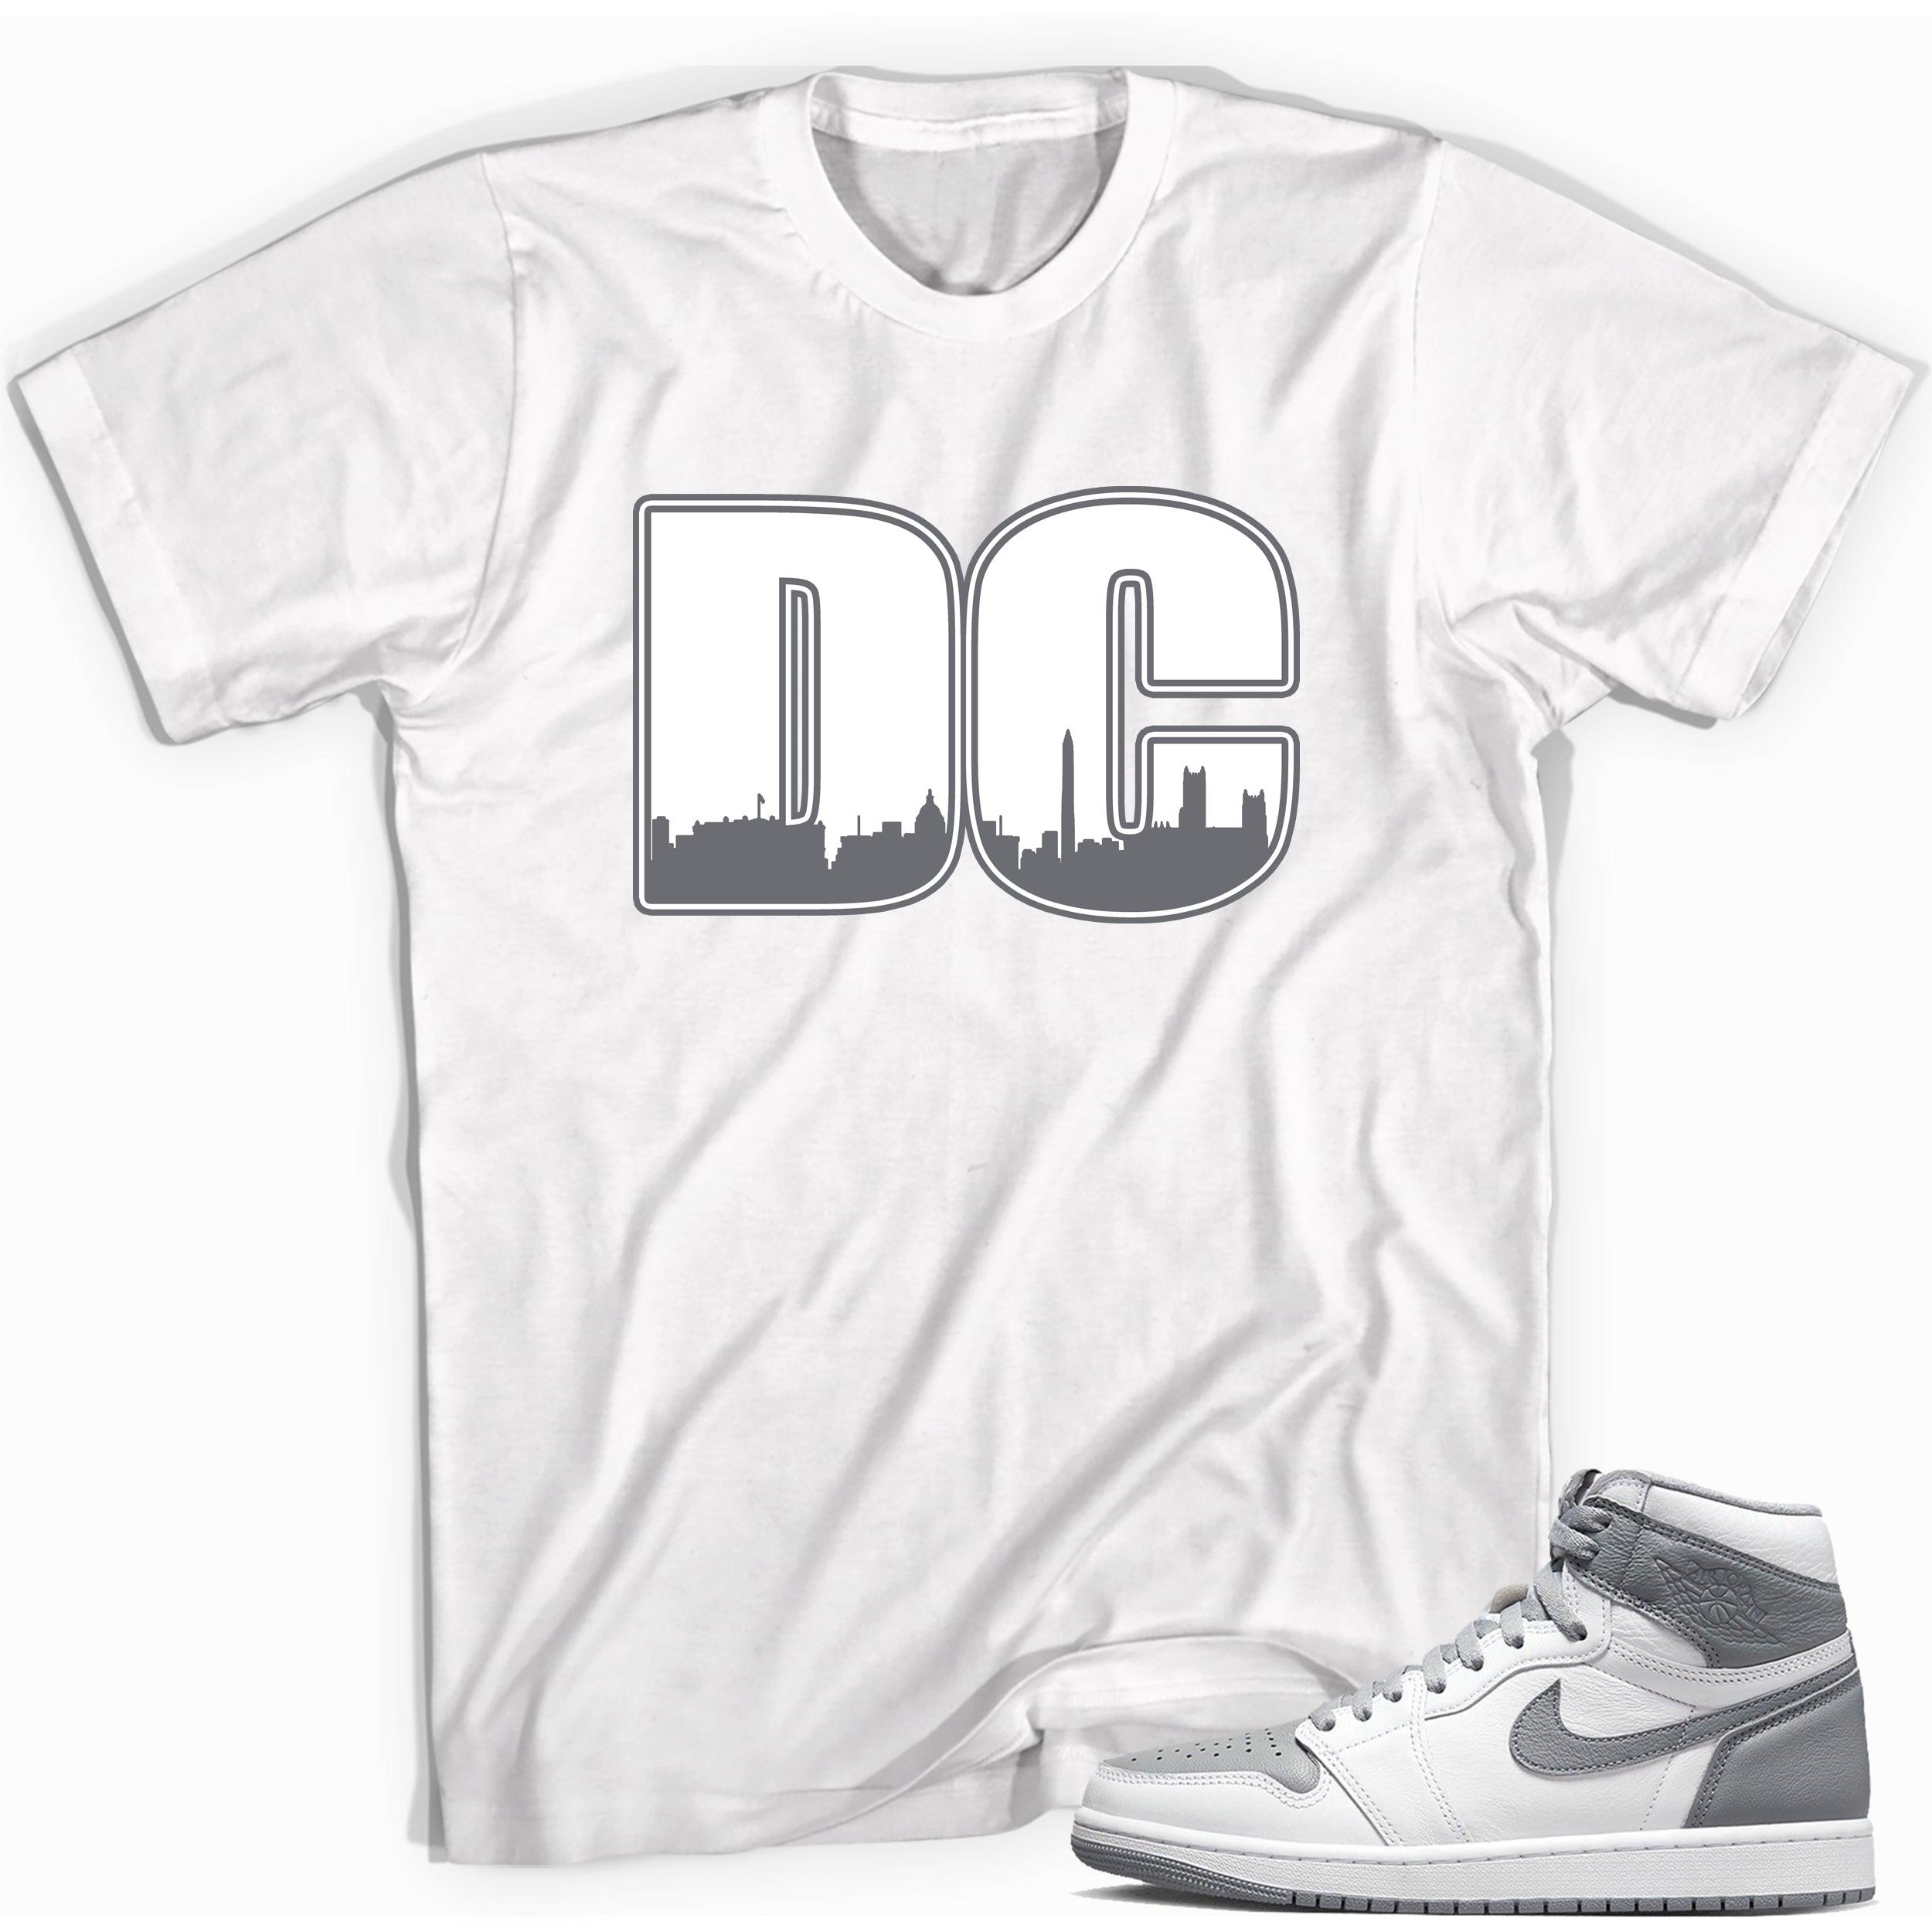 Jordan 1s High OG Stealth Shirt - DC City - Sneaker Shirts Outlet